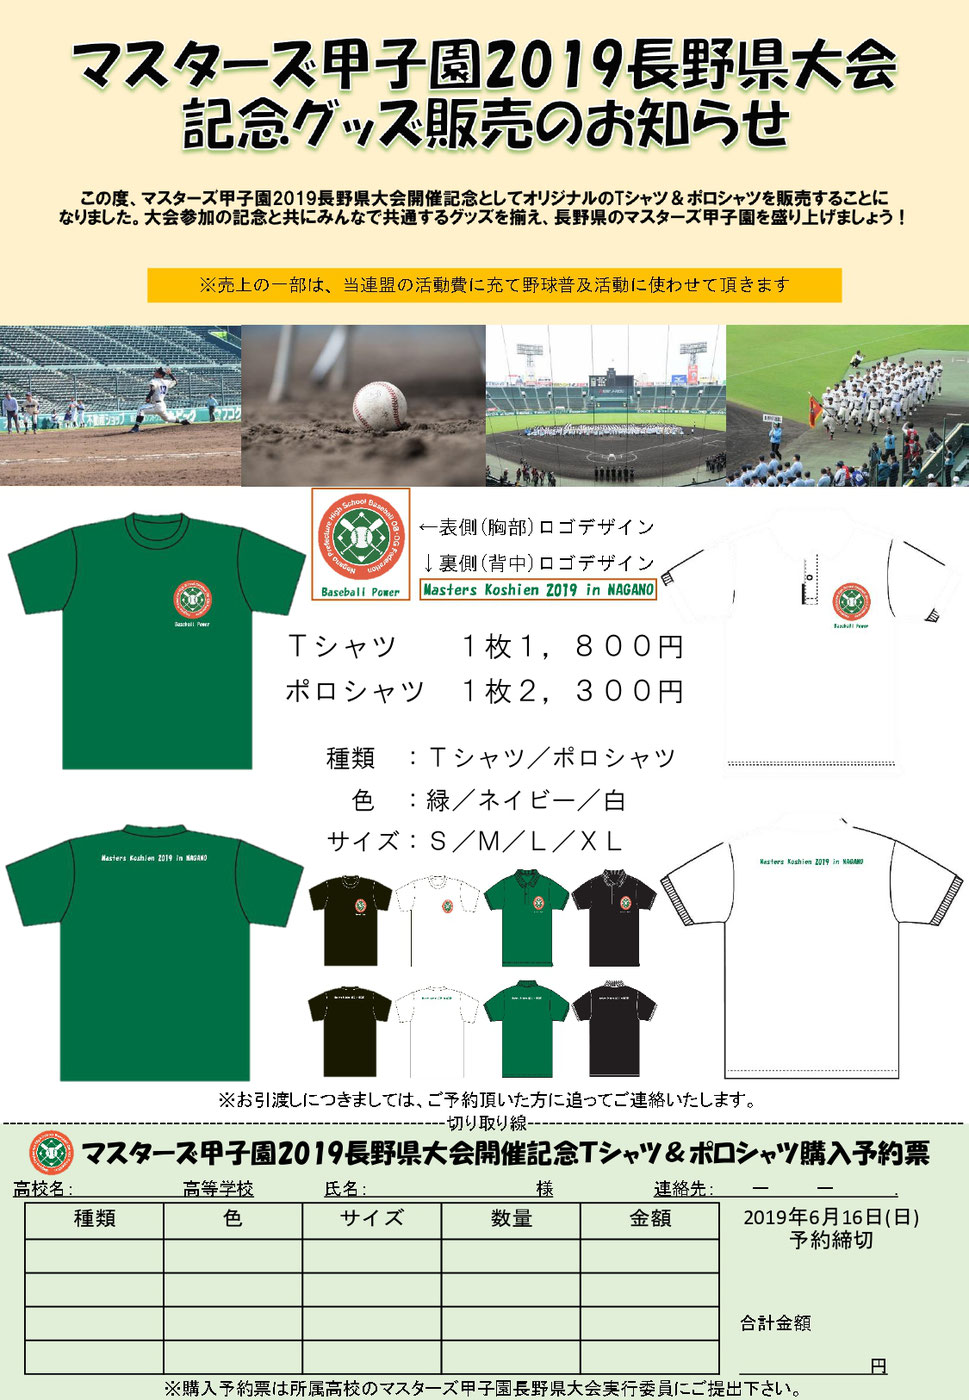 申し込みはこちらまで - 長野県高校野球OB・OG連盟